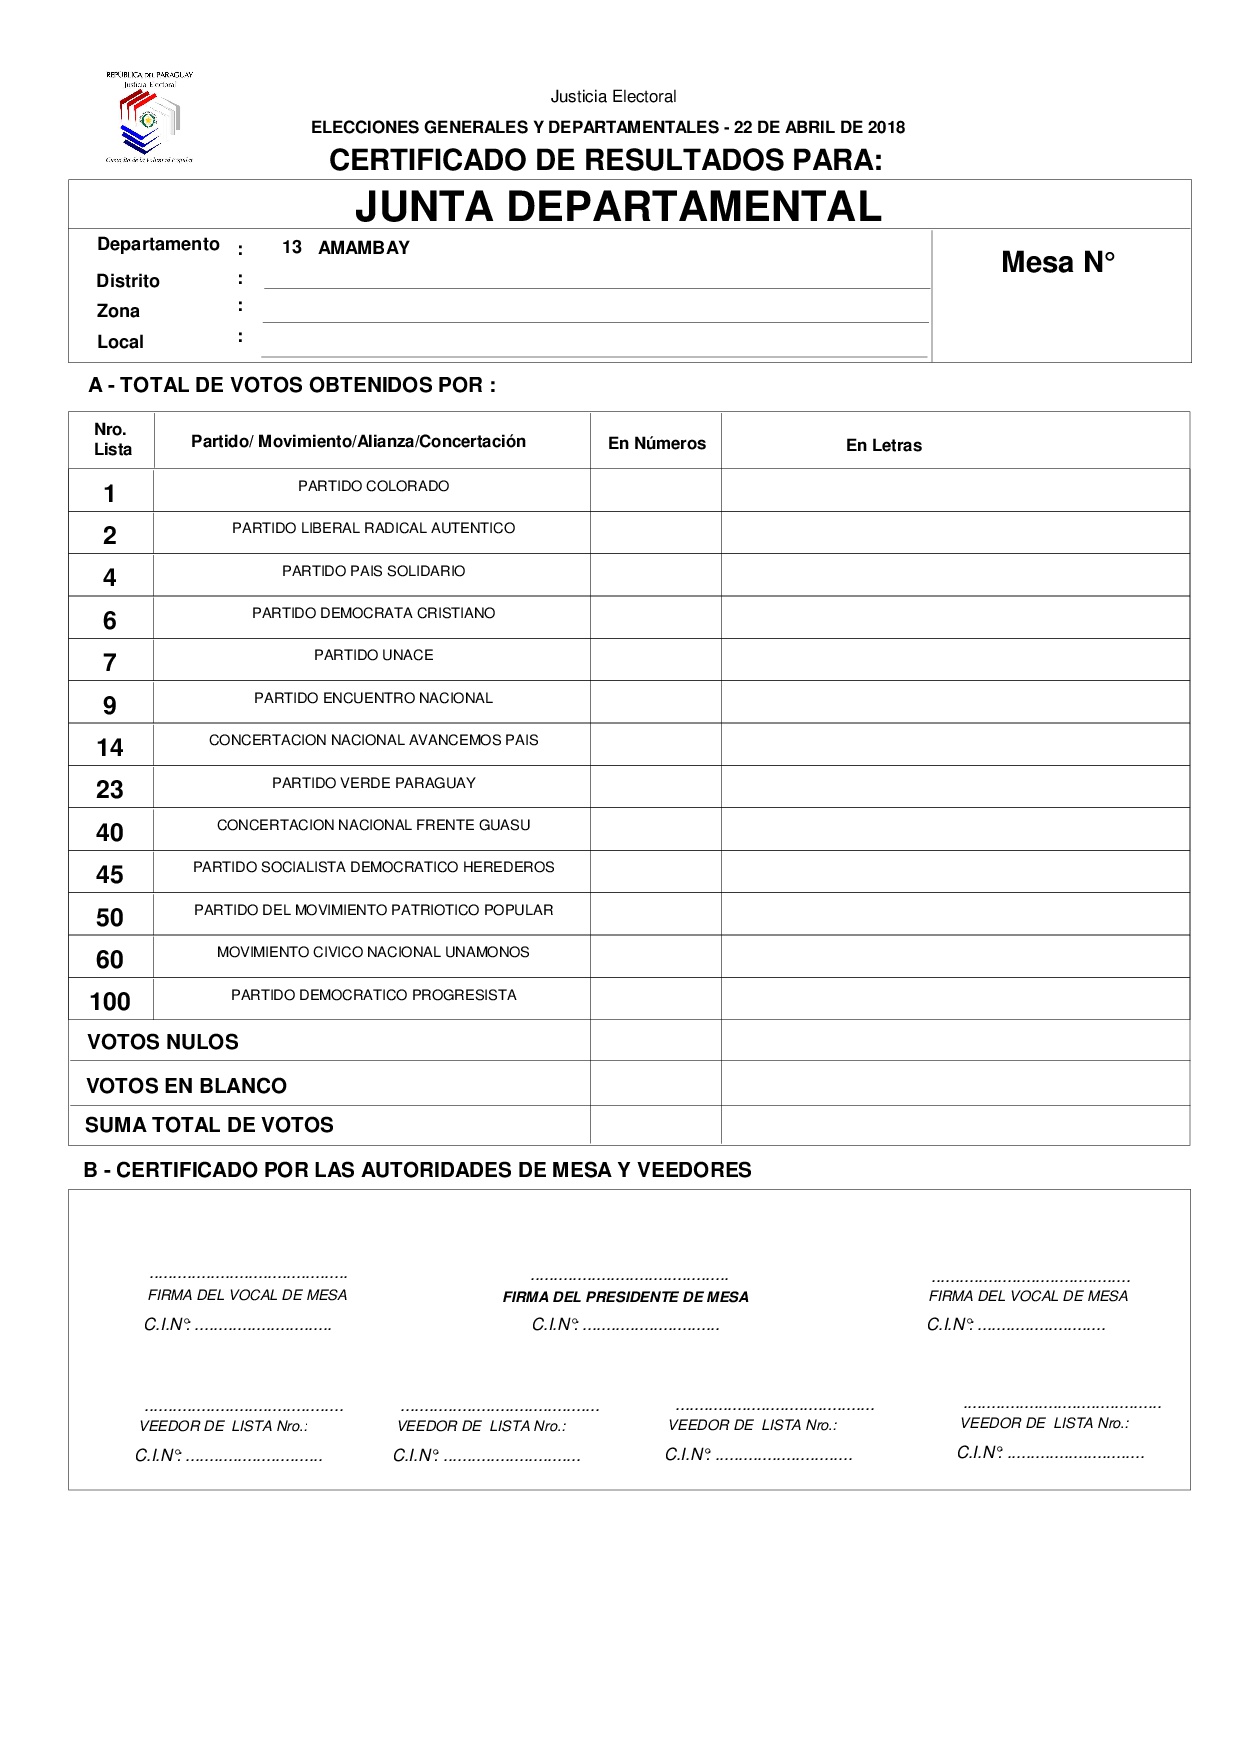 Certificado de Resultados Para JUNTA DEPARTAMENTAL DE AMAMBAY